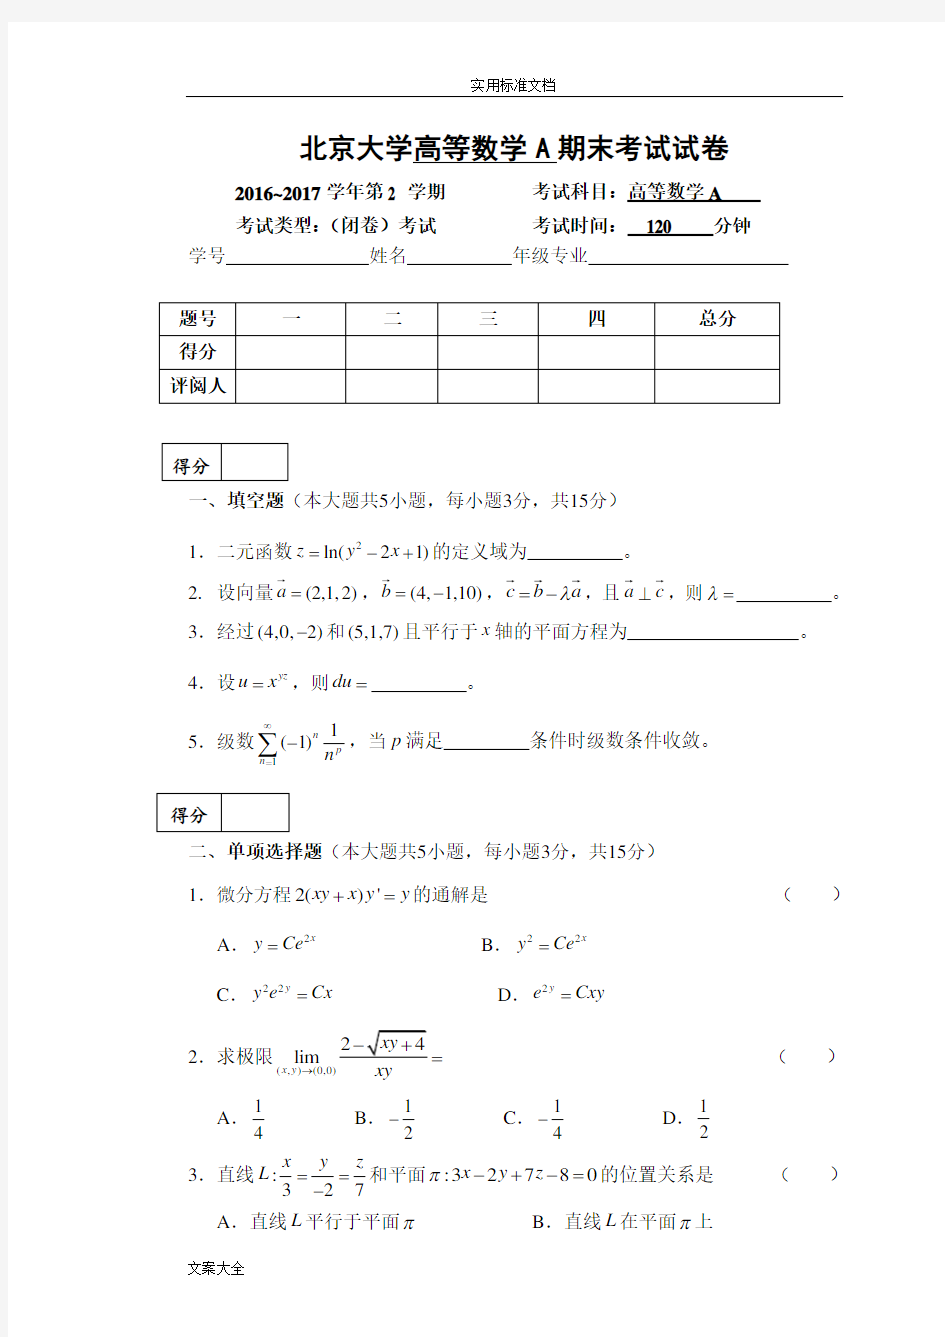 北京大学2016-2017学年第2学期高等数学A期末考试试卷